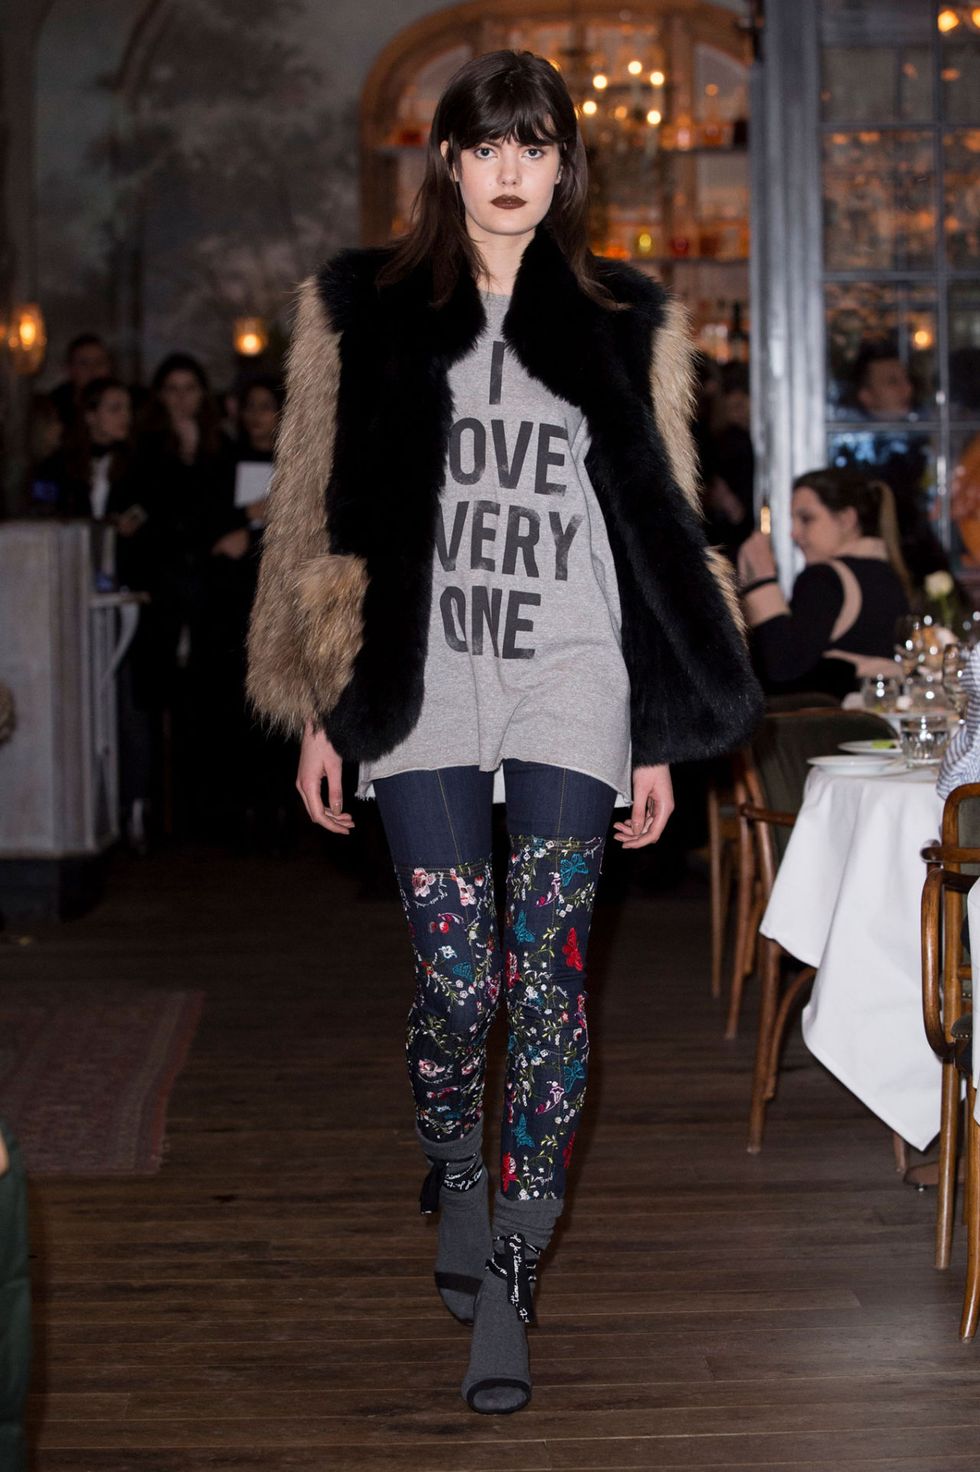 Maria Grazia Chiuri da Dior ha dato il via al trend delle t-shirt personalizzate con frasi e messaggi speciali, e la New York Fashion Week segue a ruota anche per il prossimo autunno inverno 2017 2018